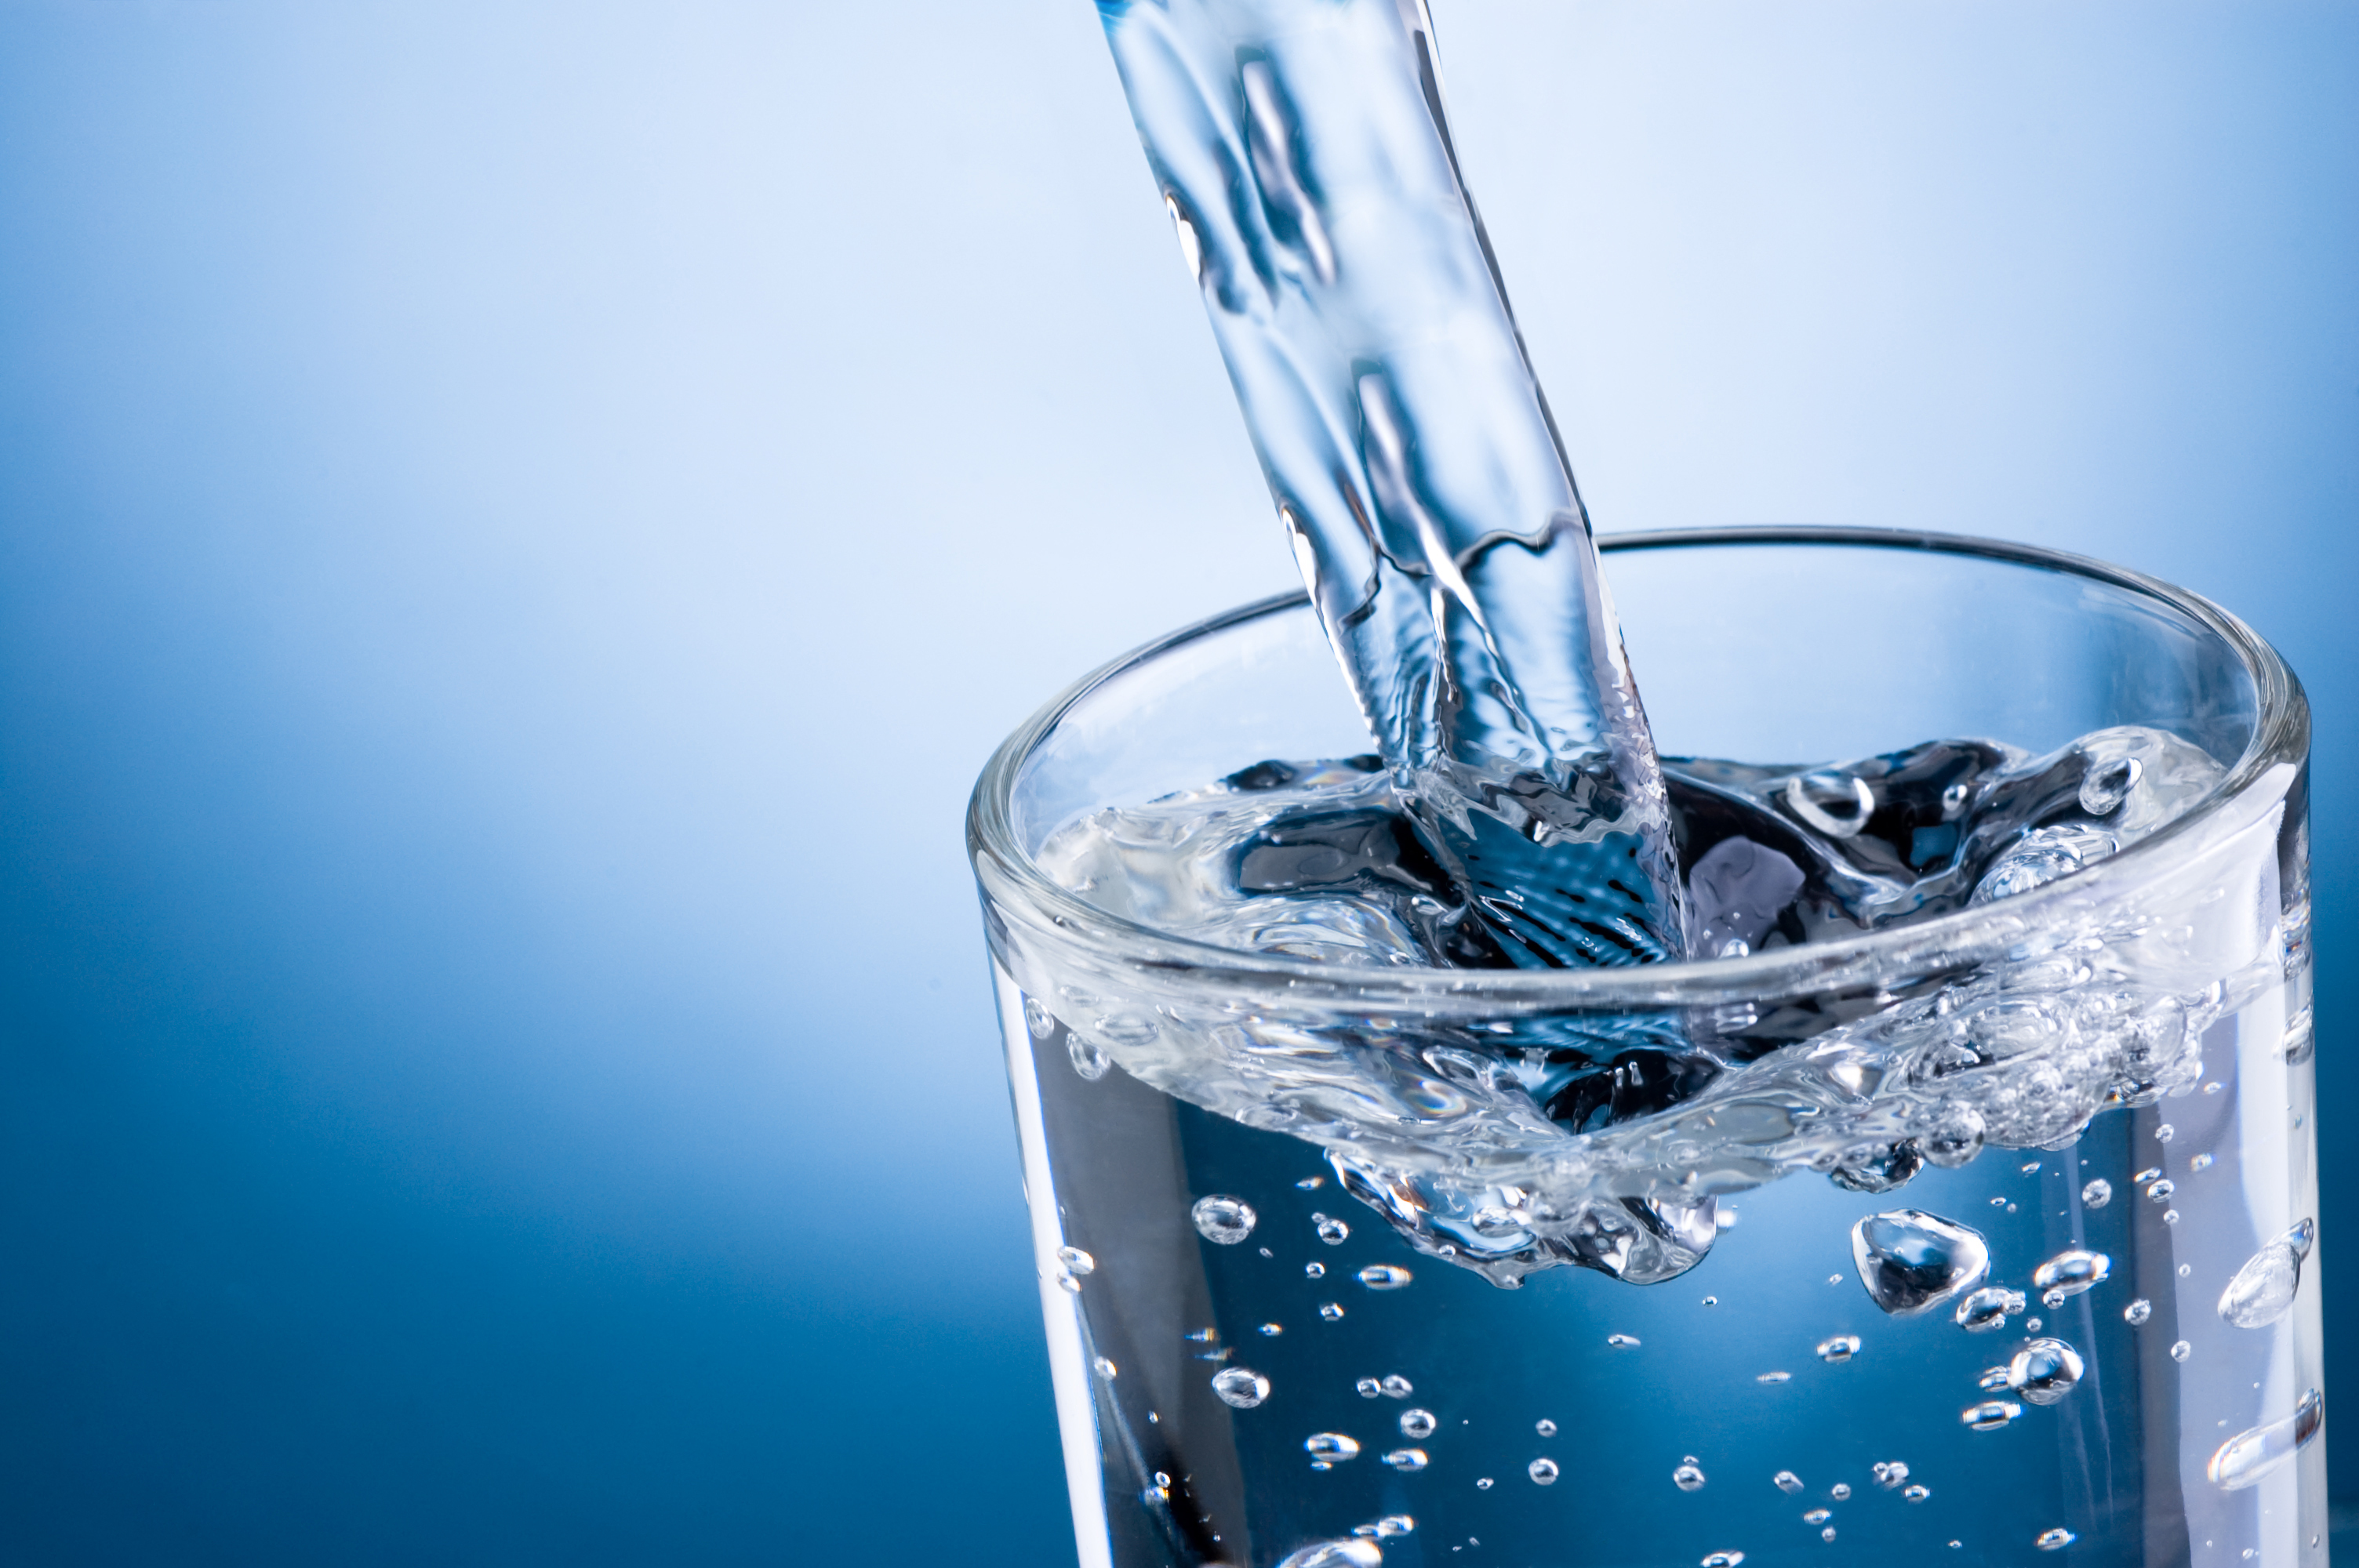 دراسة استرالية: شرب الماء من غير عطش يمكن أن يضر بصحة الإنسان